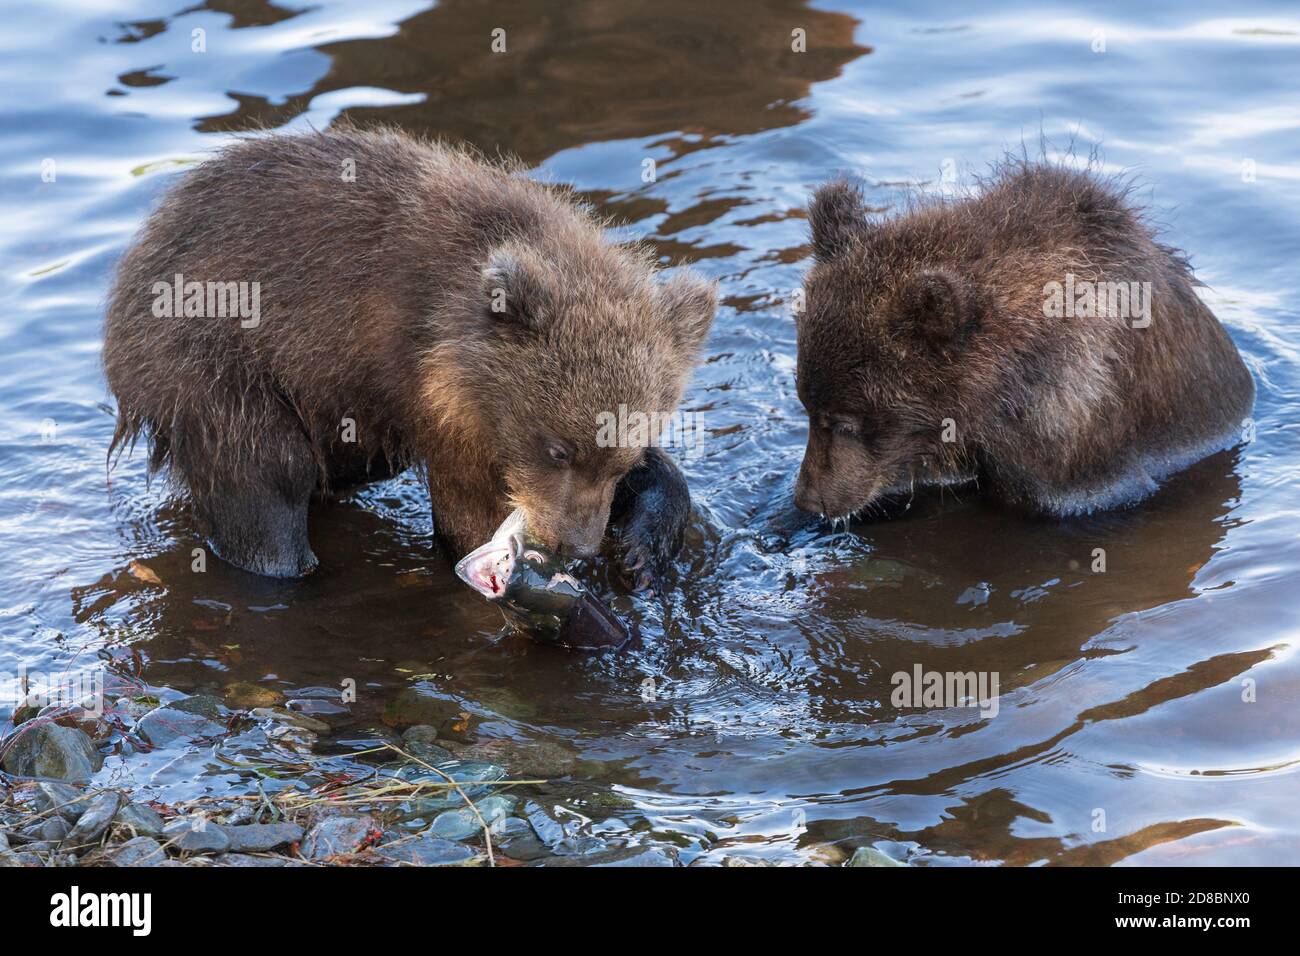 Deux petits ours bruns Kamchatka pêchant du saumon rouge dans la rivière pendant le frai, mangent-les en se tenant dans l'eau. Animaux sauvages enfants d'habitude naturelle Banque D'Images